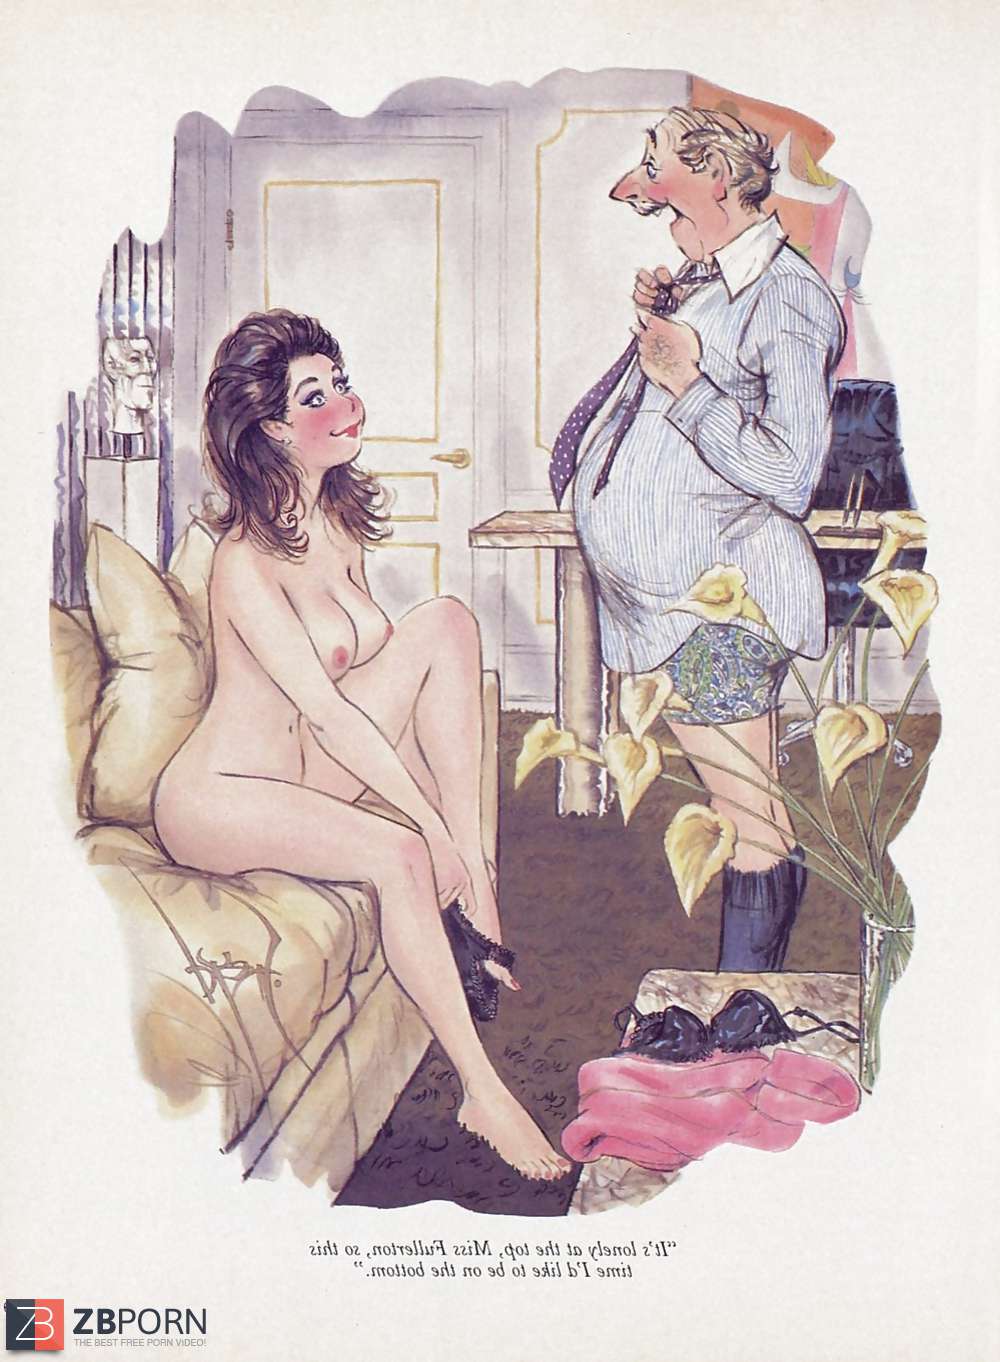 Erotic Pix - Vintage playboy penthouse cartoon. 